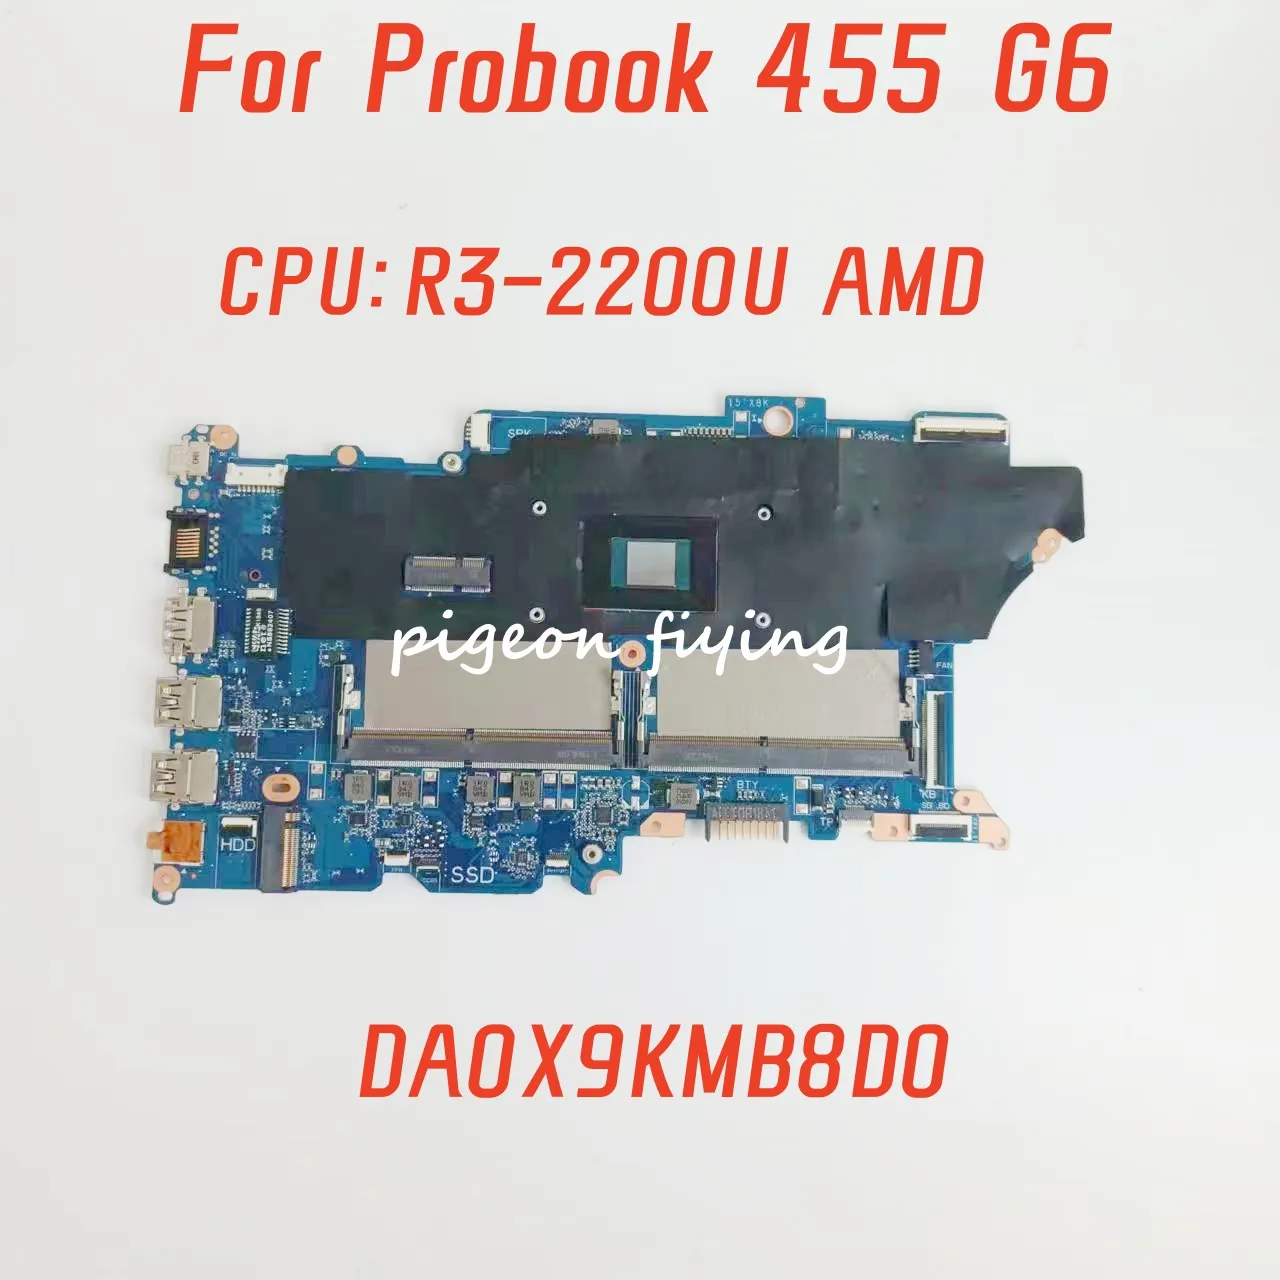 DA0X9KMB8D0 для материнской платы ноутбука Hp Probook 455 G6 Процессор: R3-2200U AMD, 100% протестирован, полностью в порядке